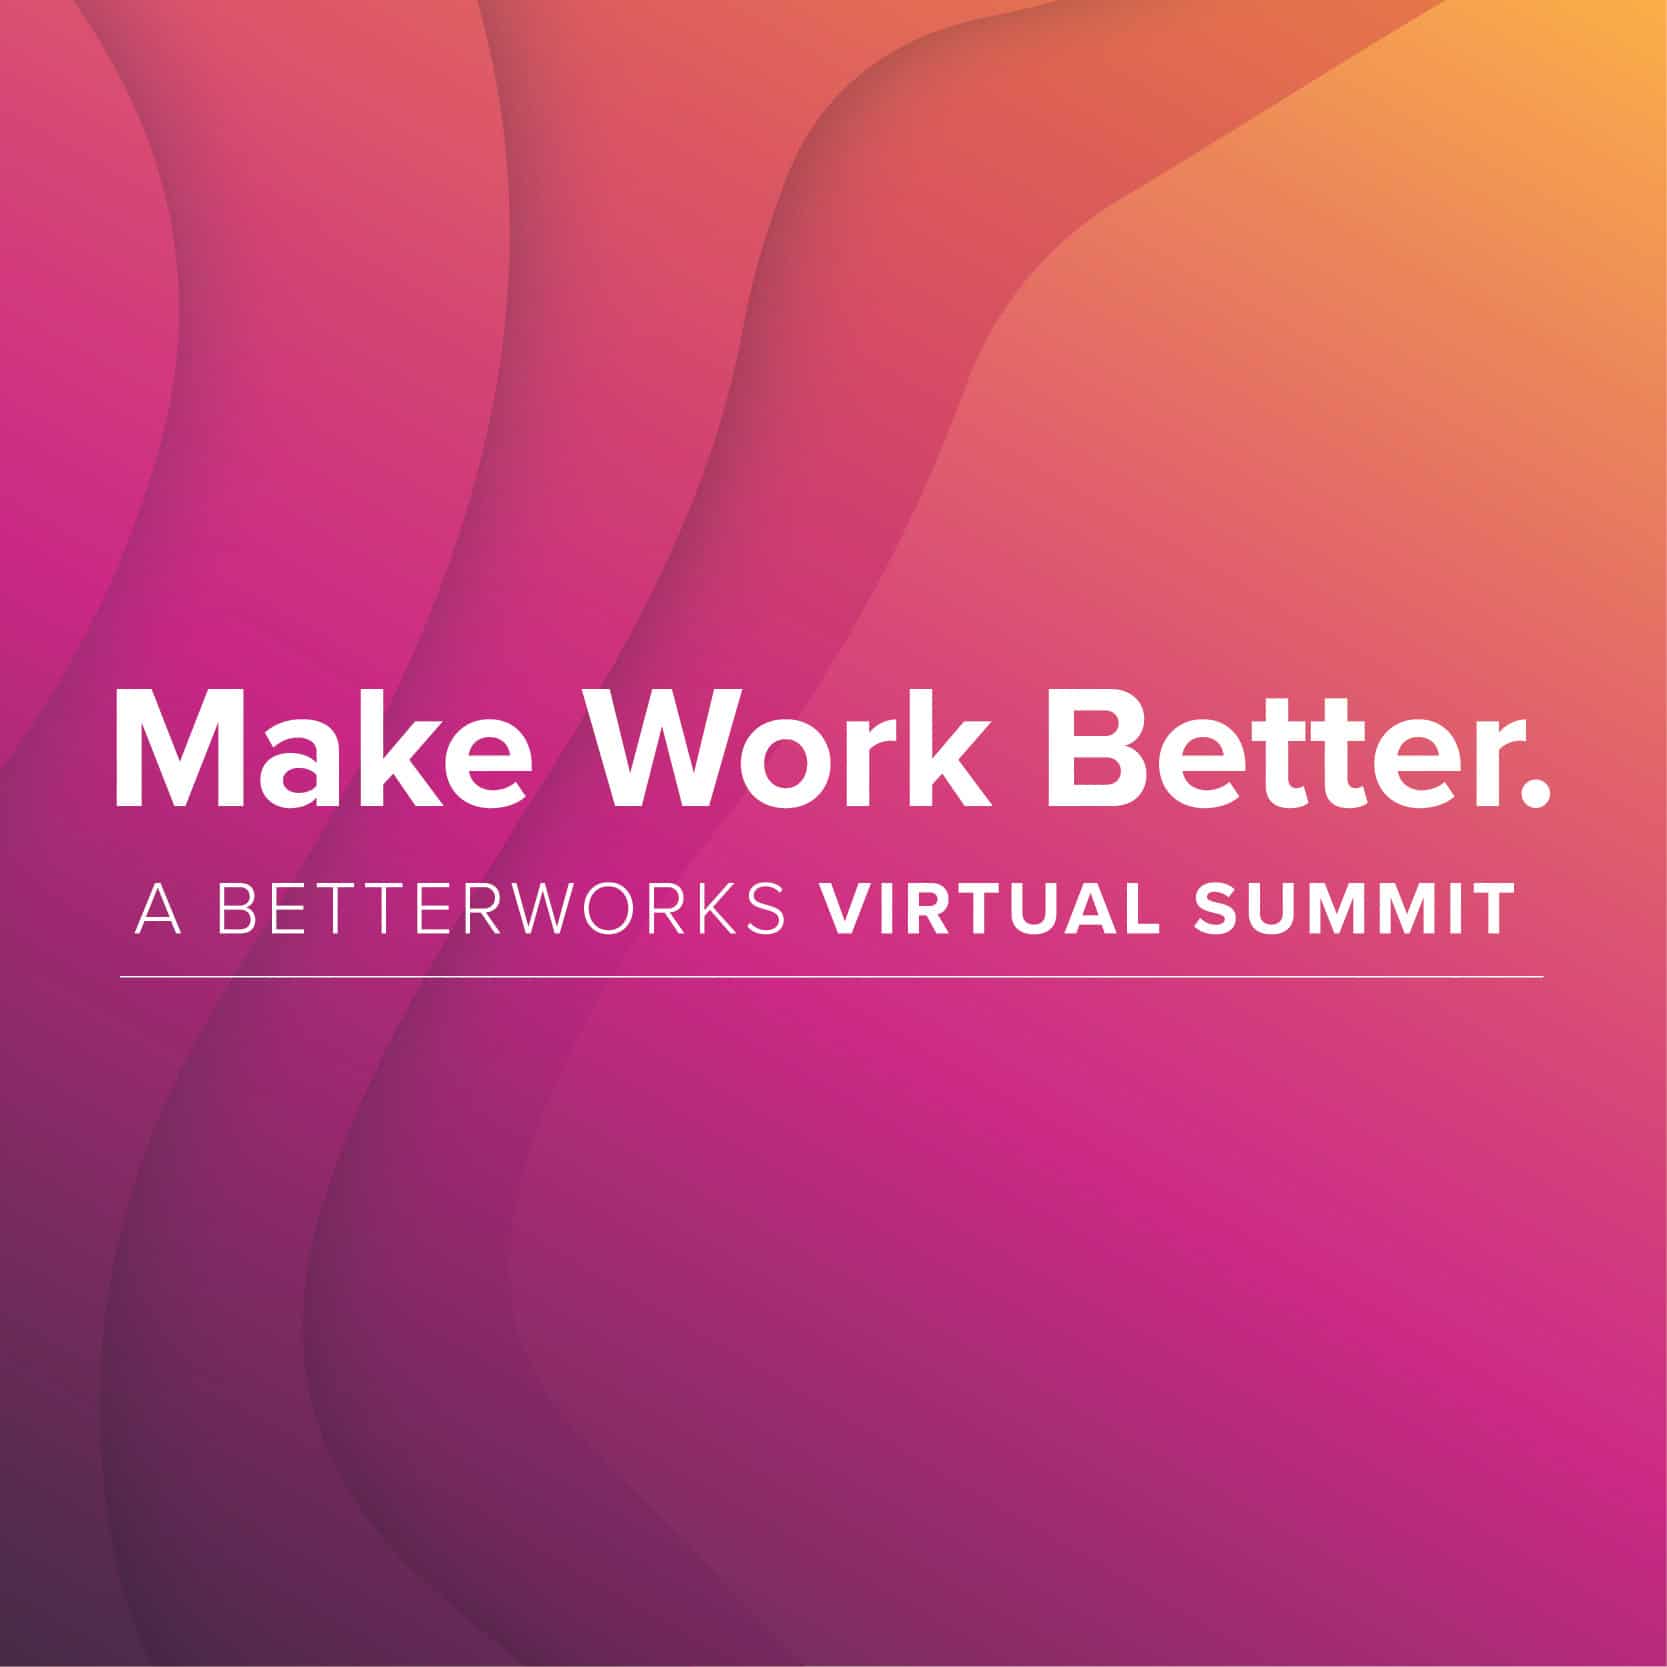 Make Work Better Virtual Summit Thumbnail - Image of logo